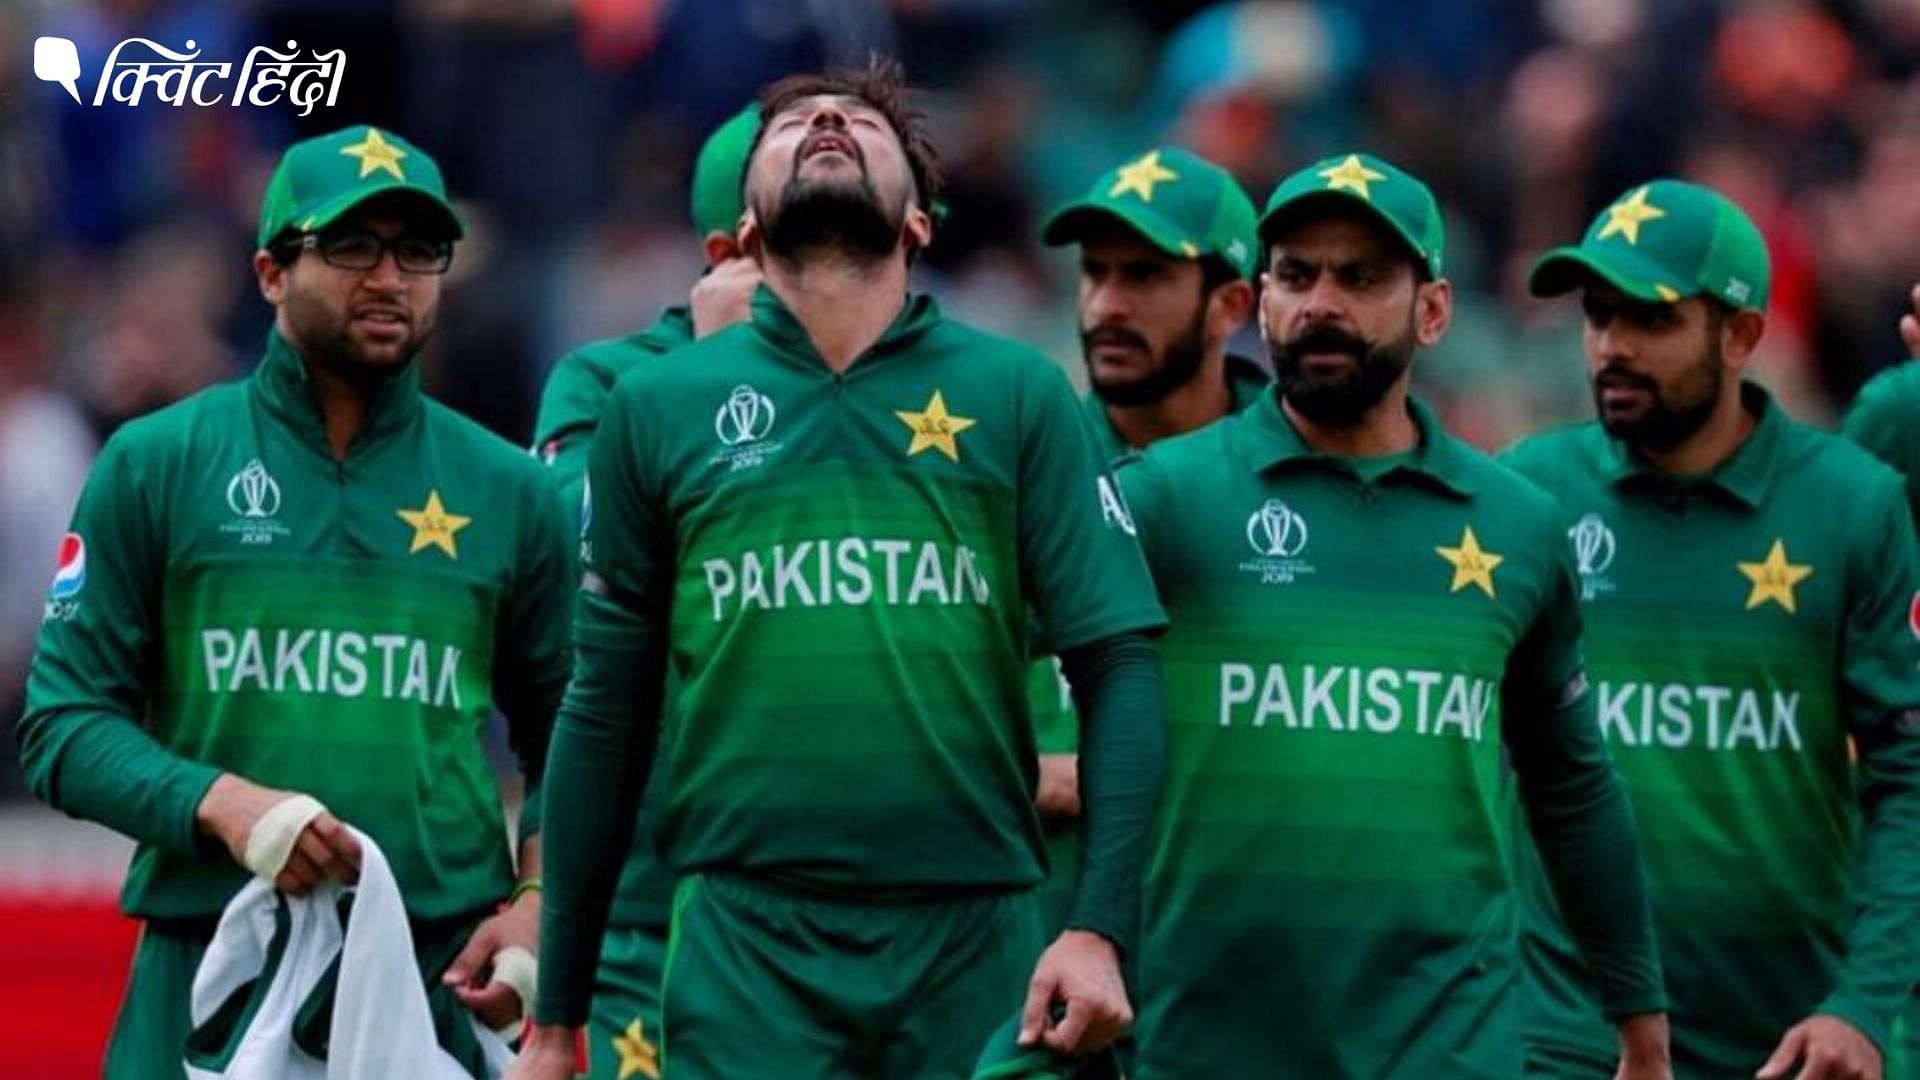 पाकिस्तान क्रिकेट बोर्ड ने अगले साल भारत में होने वाले टी20 वर्ल्ड कप में शामिल न होने की धमकी दी थी